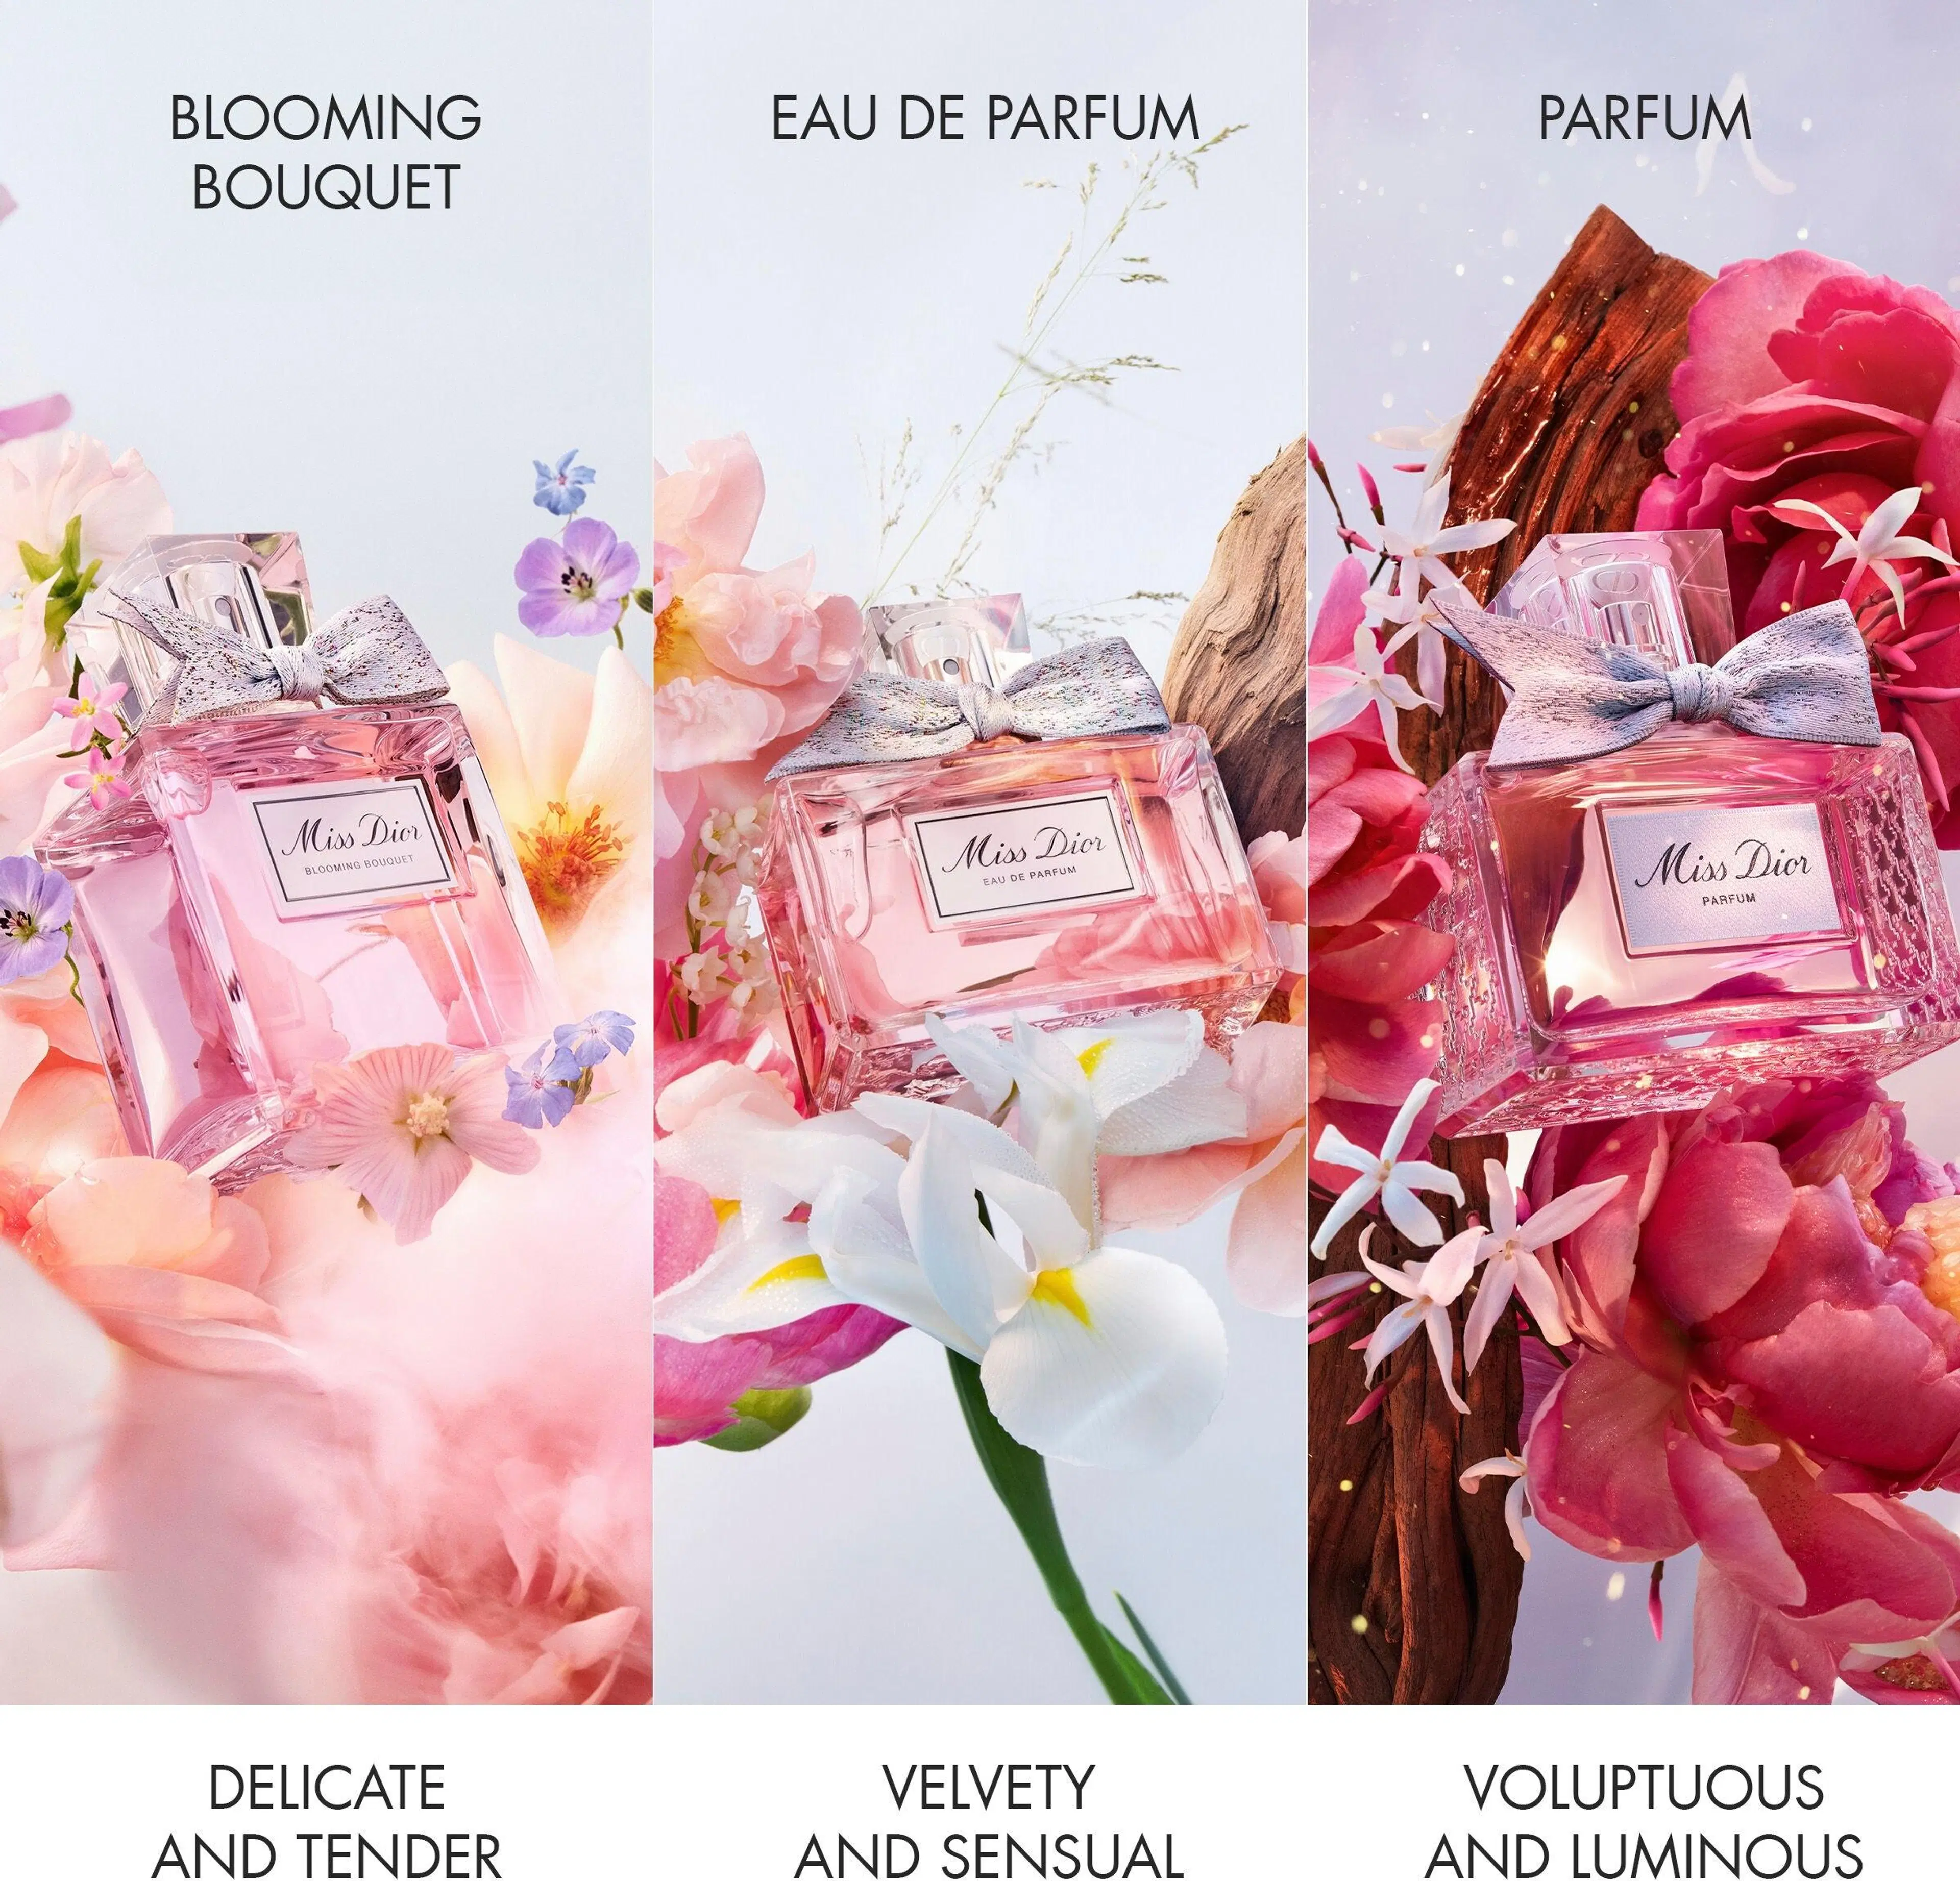 DIOR Miss Dior Parfum tuoksu 50 ml